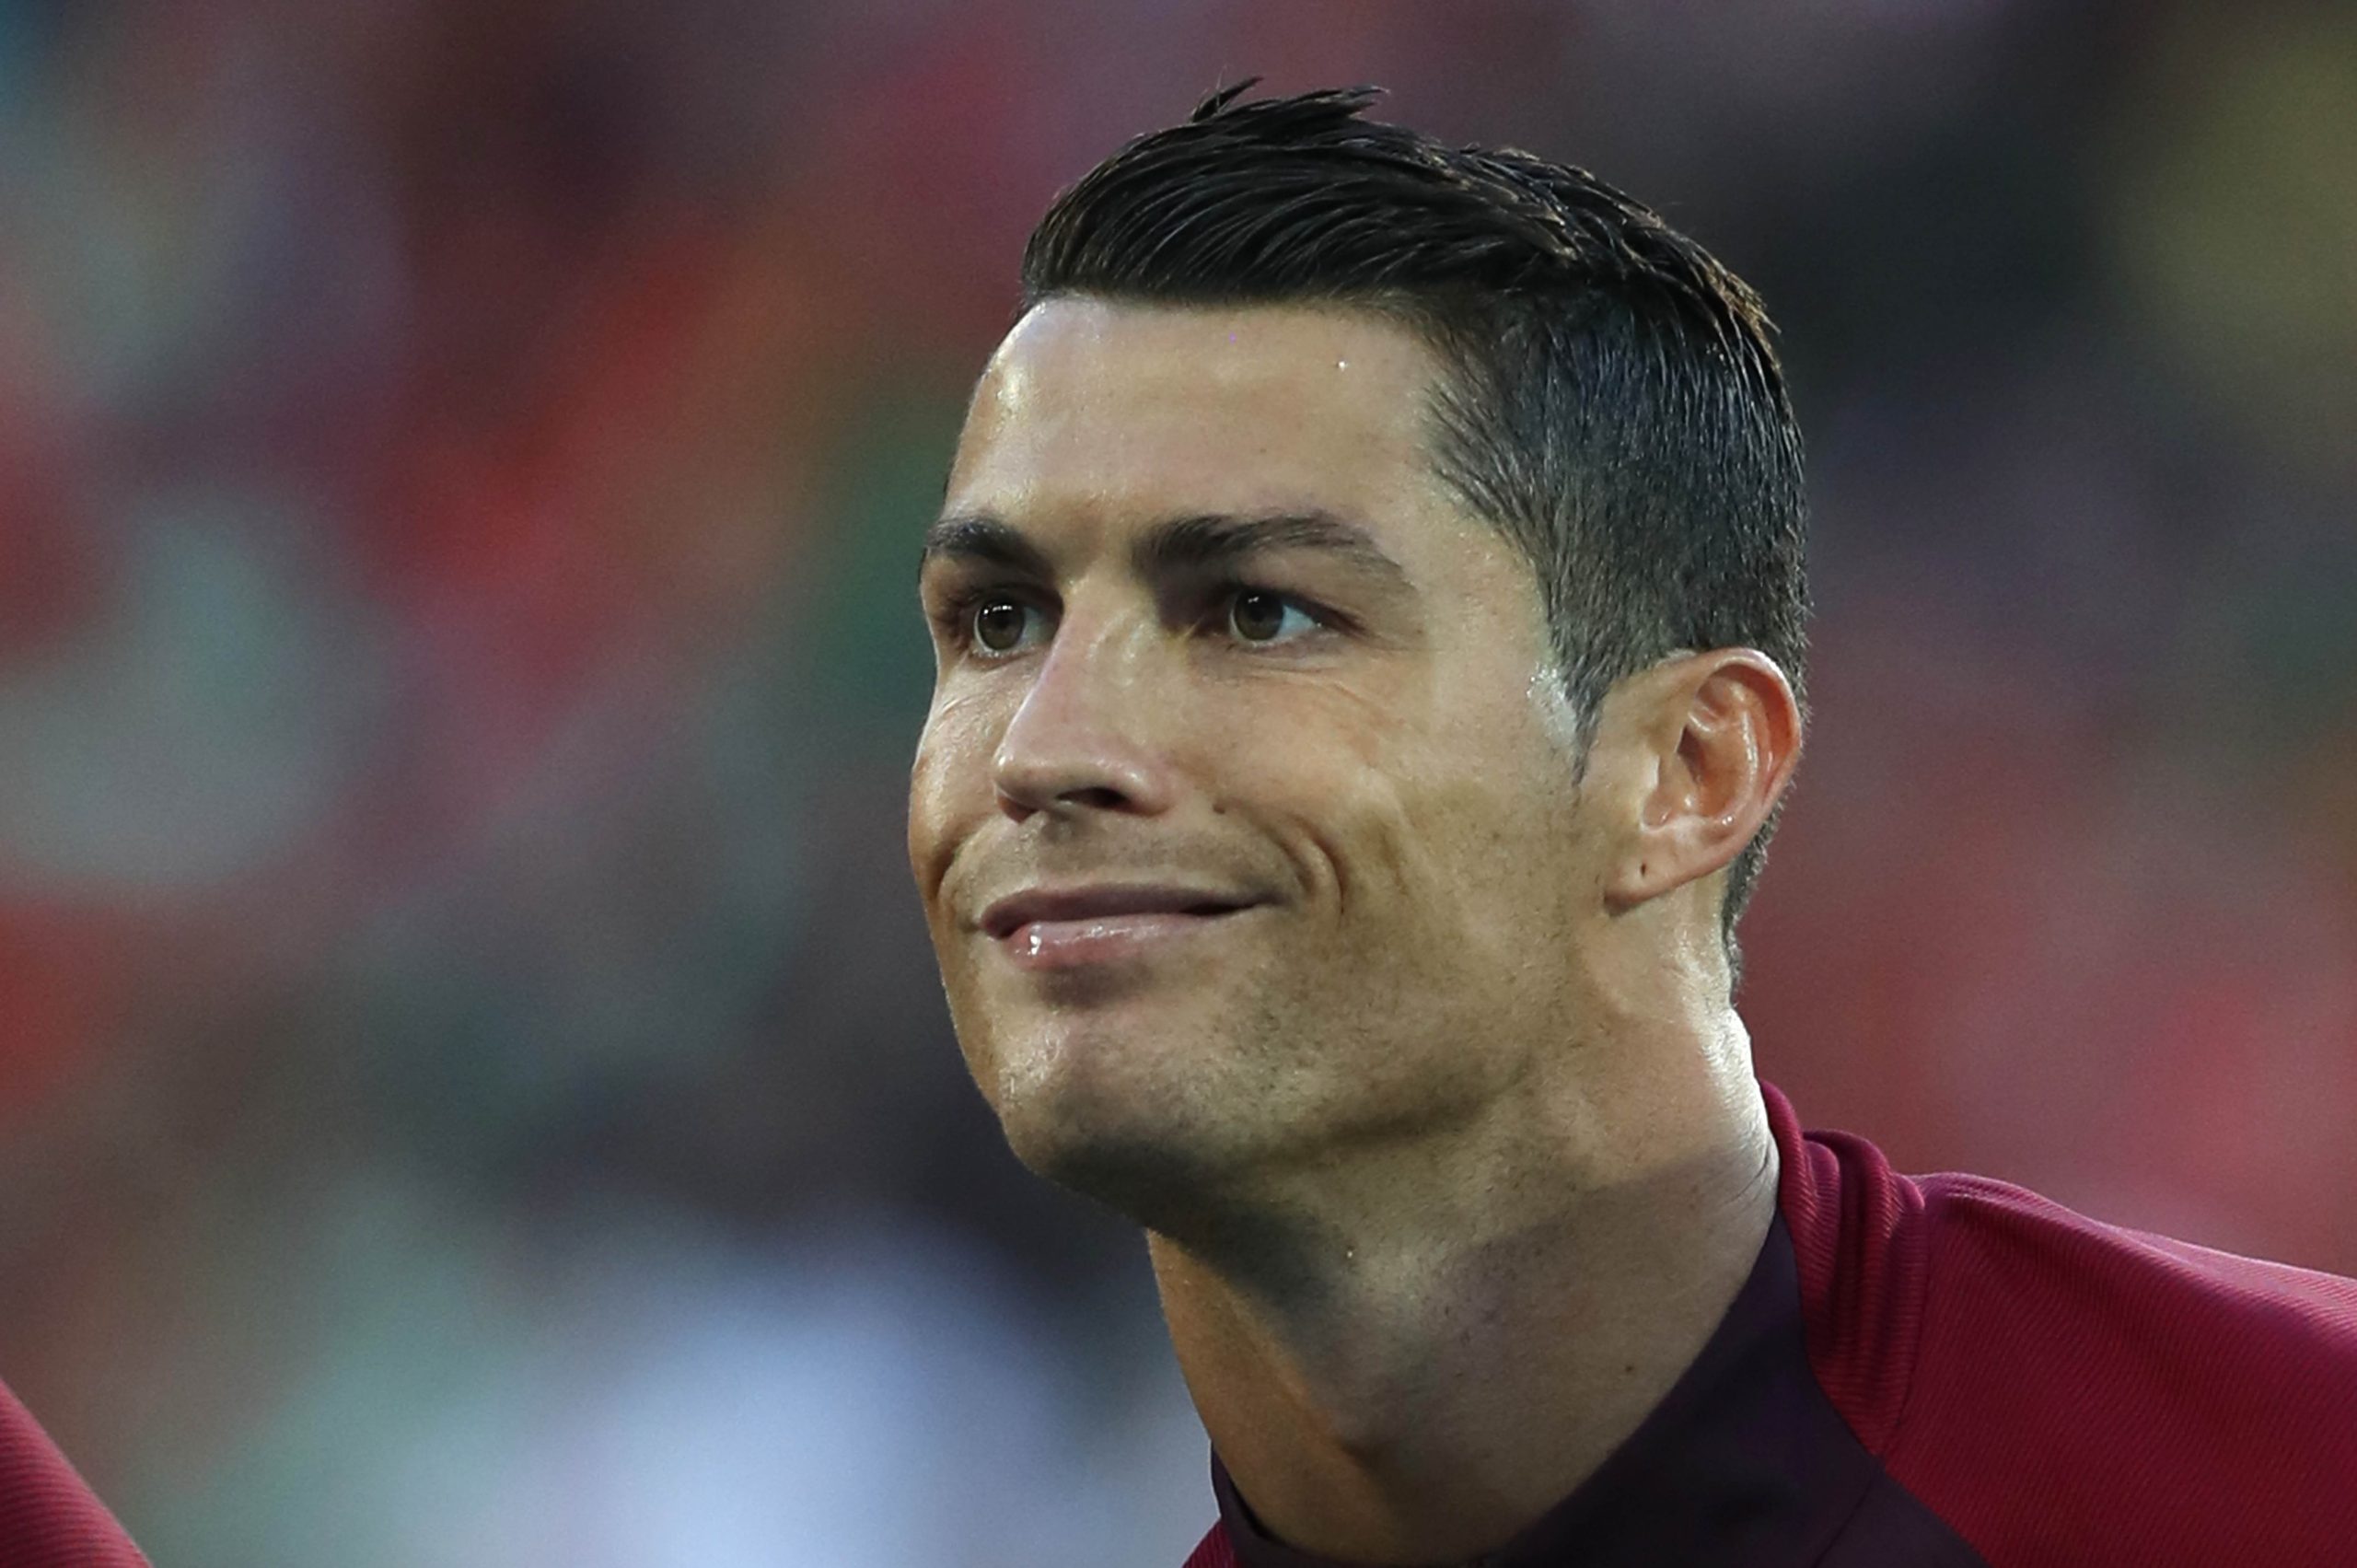 Desafio na net deixa Ronaldo de cuecas [vídeo]